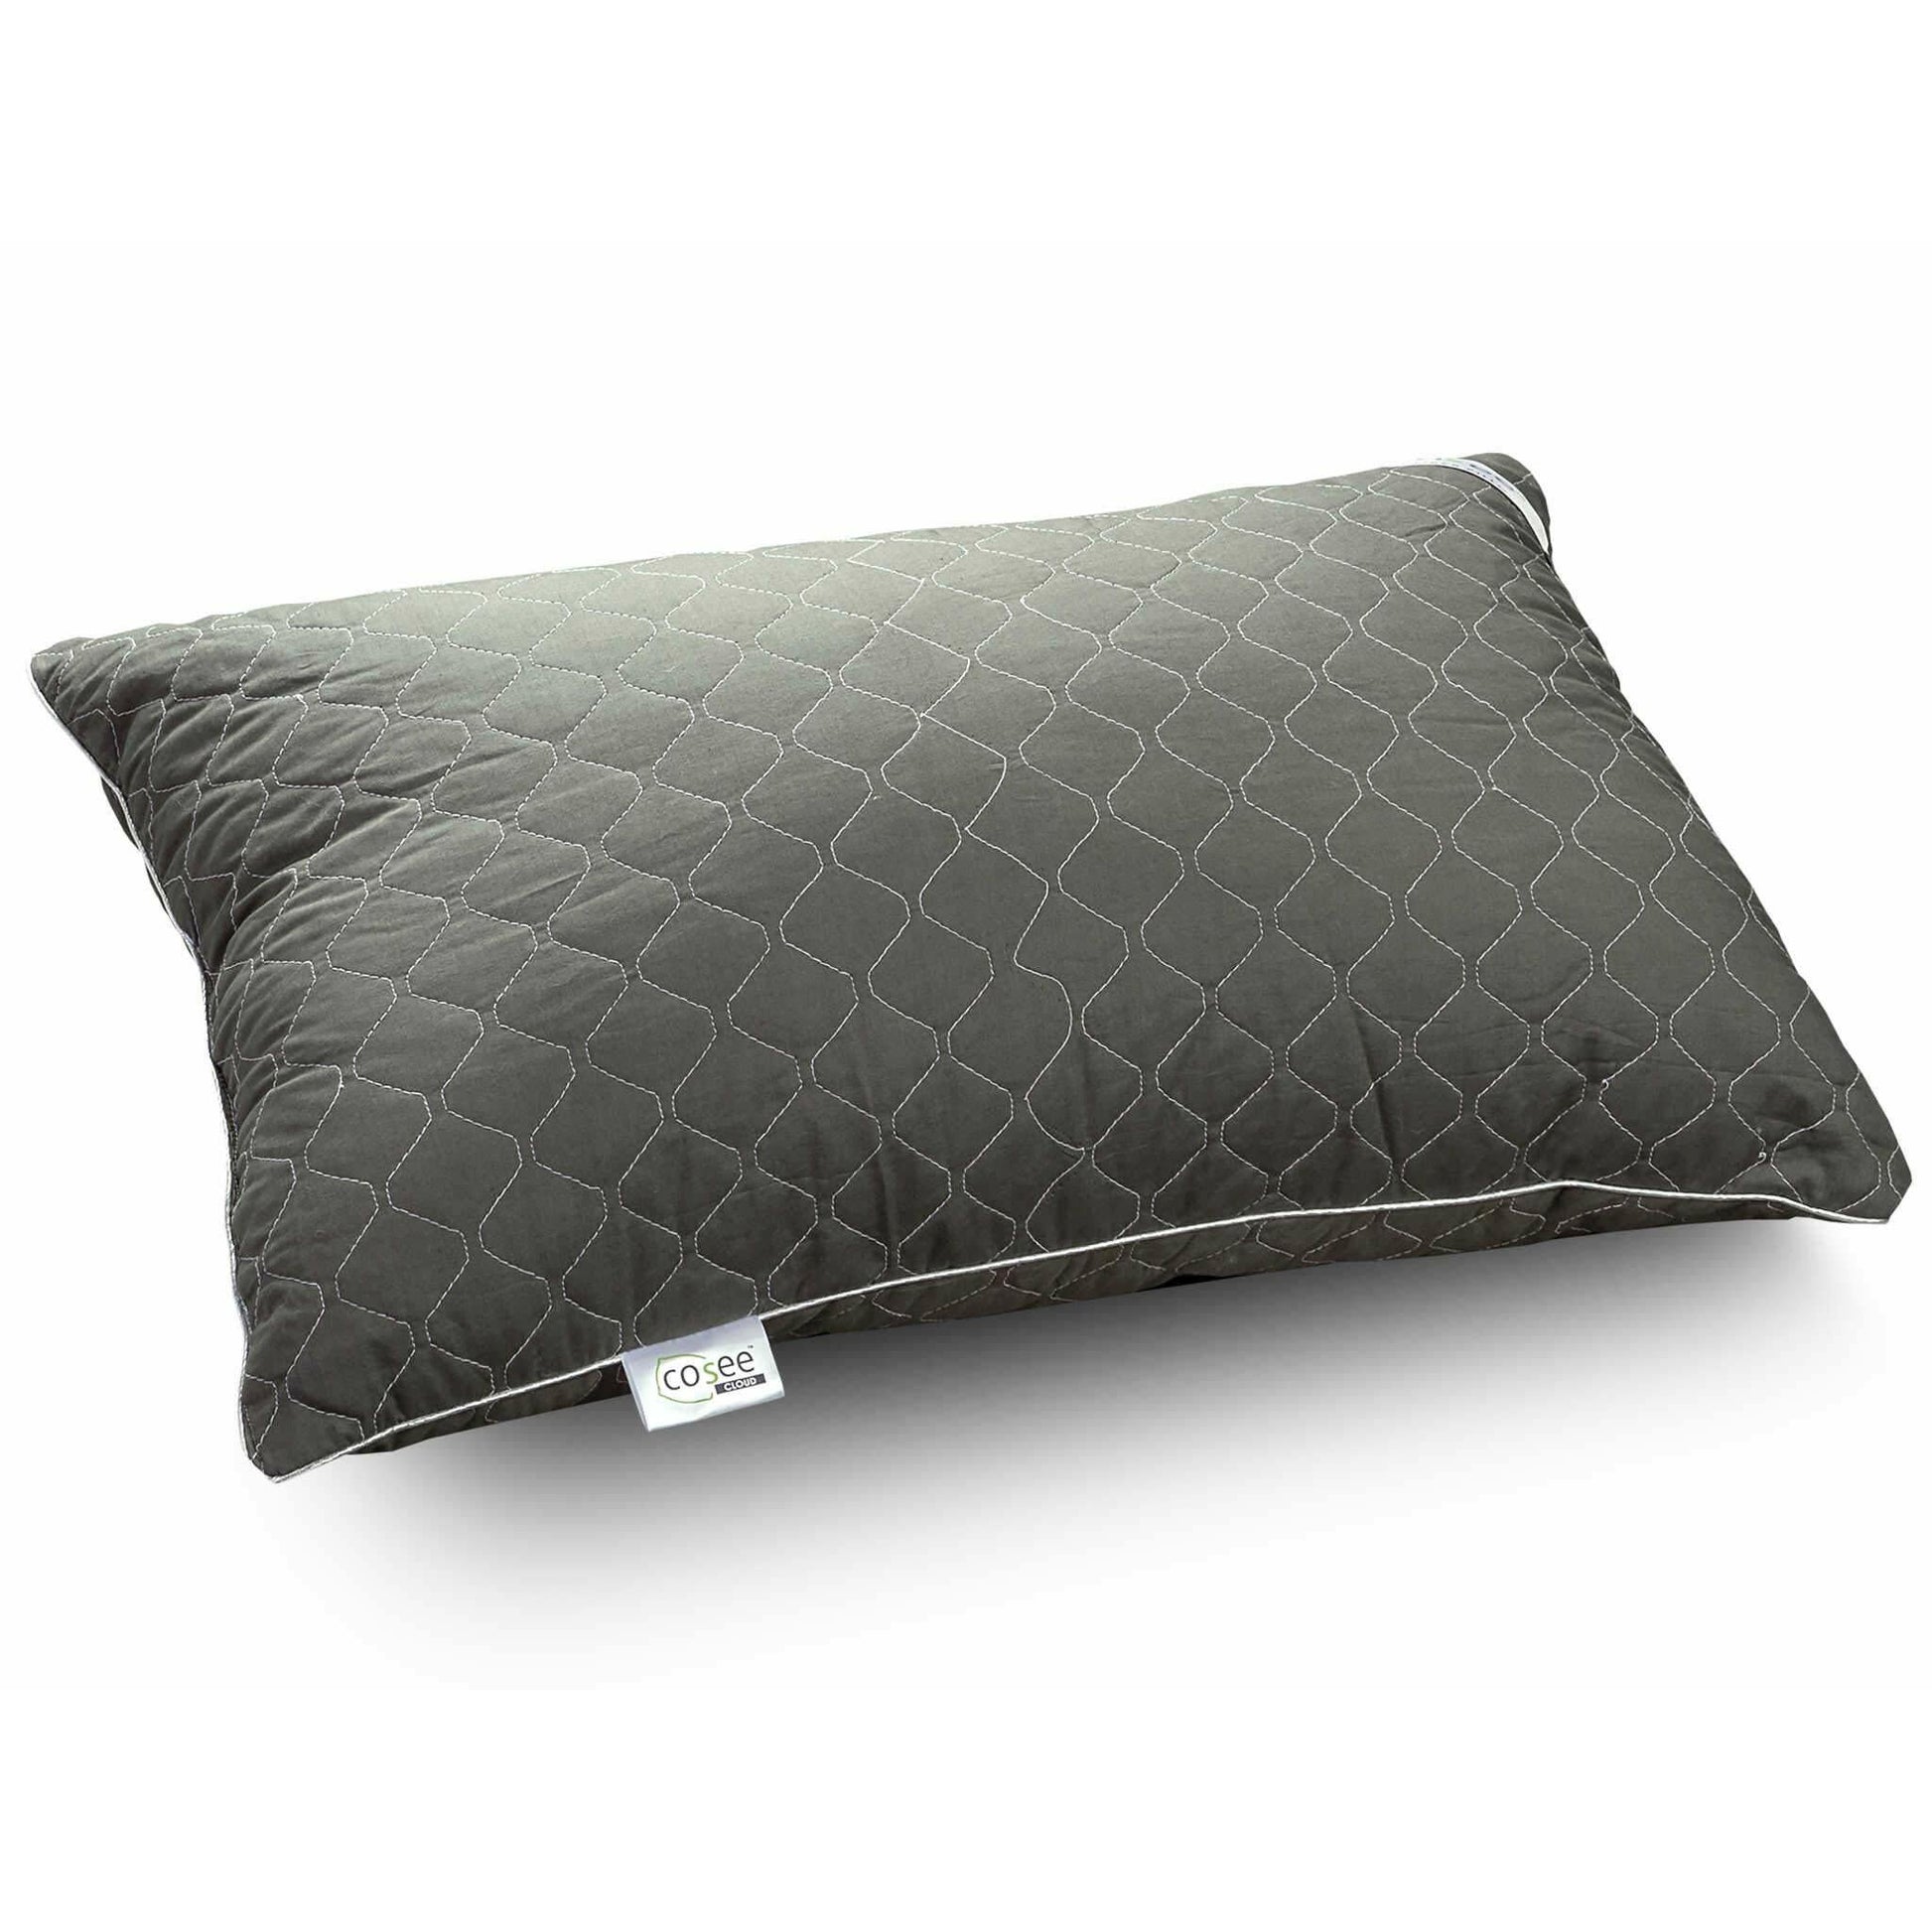 Cosee Cloud Ball Fiber Pillow - SleepCosee